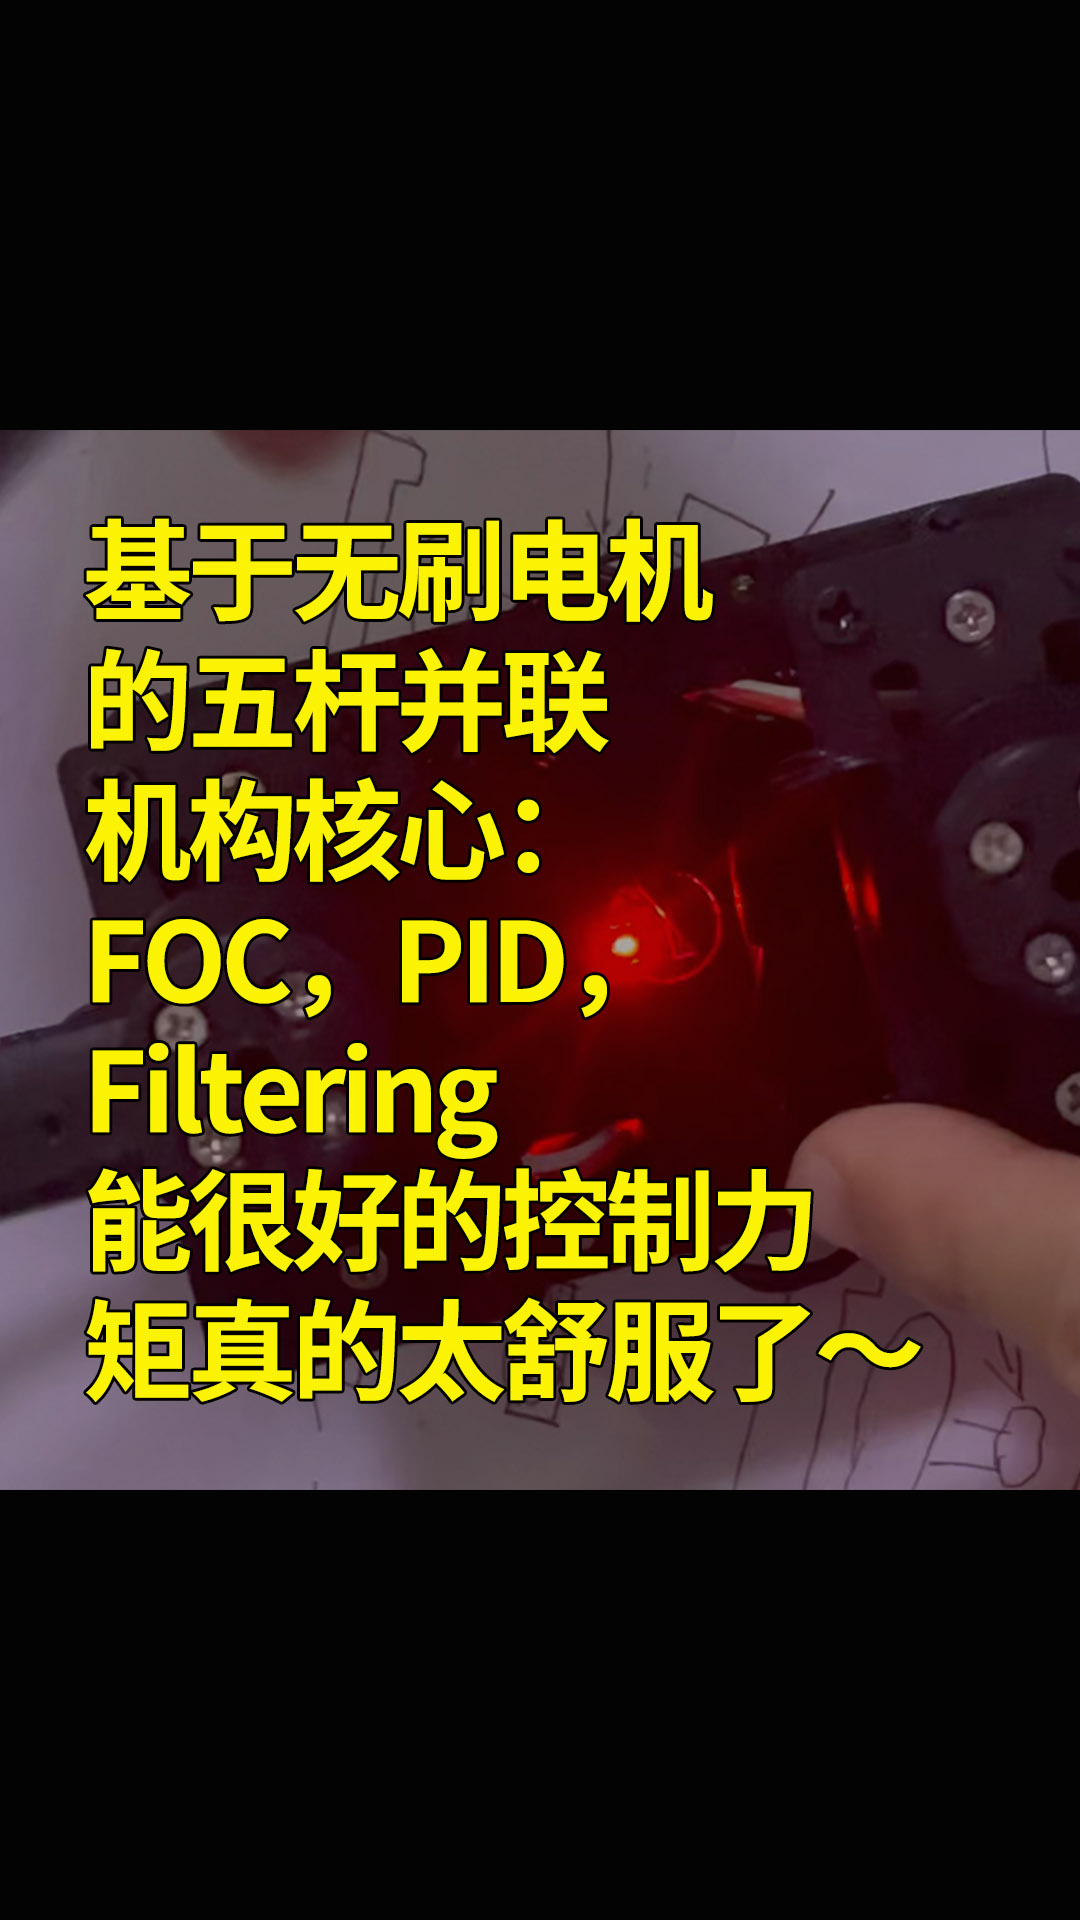 基于无刷电机的五杆并联机构核心：FOC，PID，Filtering能很好的控制力矩真的太舒服了～